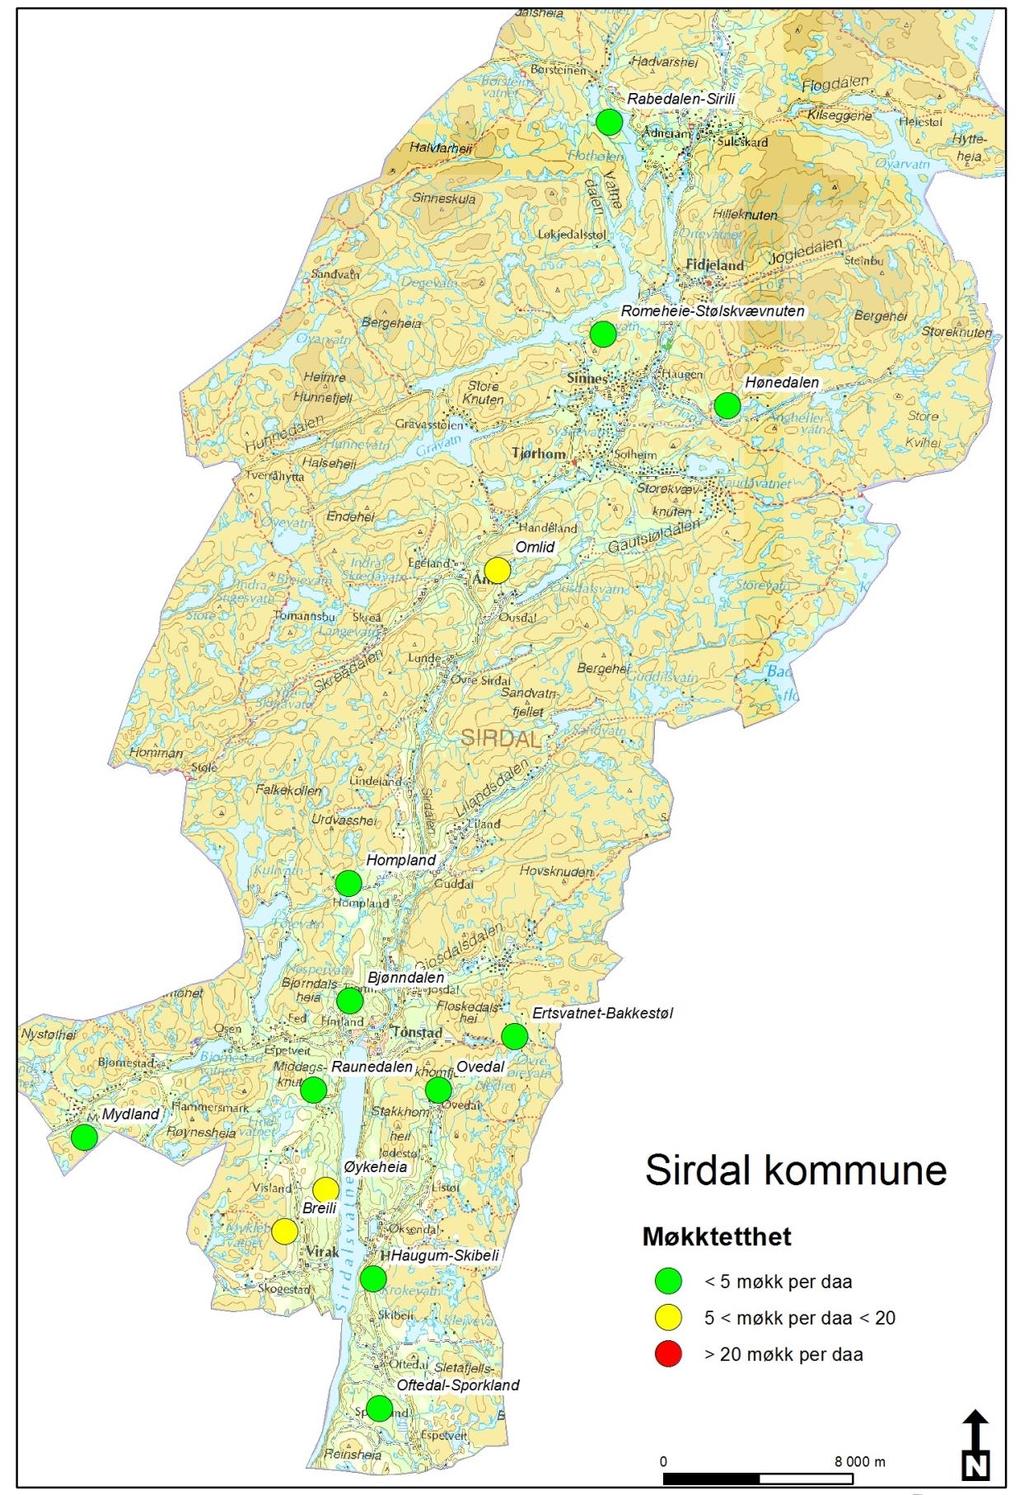 Resultat Kartfigurer Figur 4. Gjennomsnittlig møkktetthet i de ulike takseringsområder i Sirdal 2013.